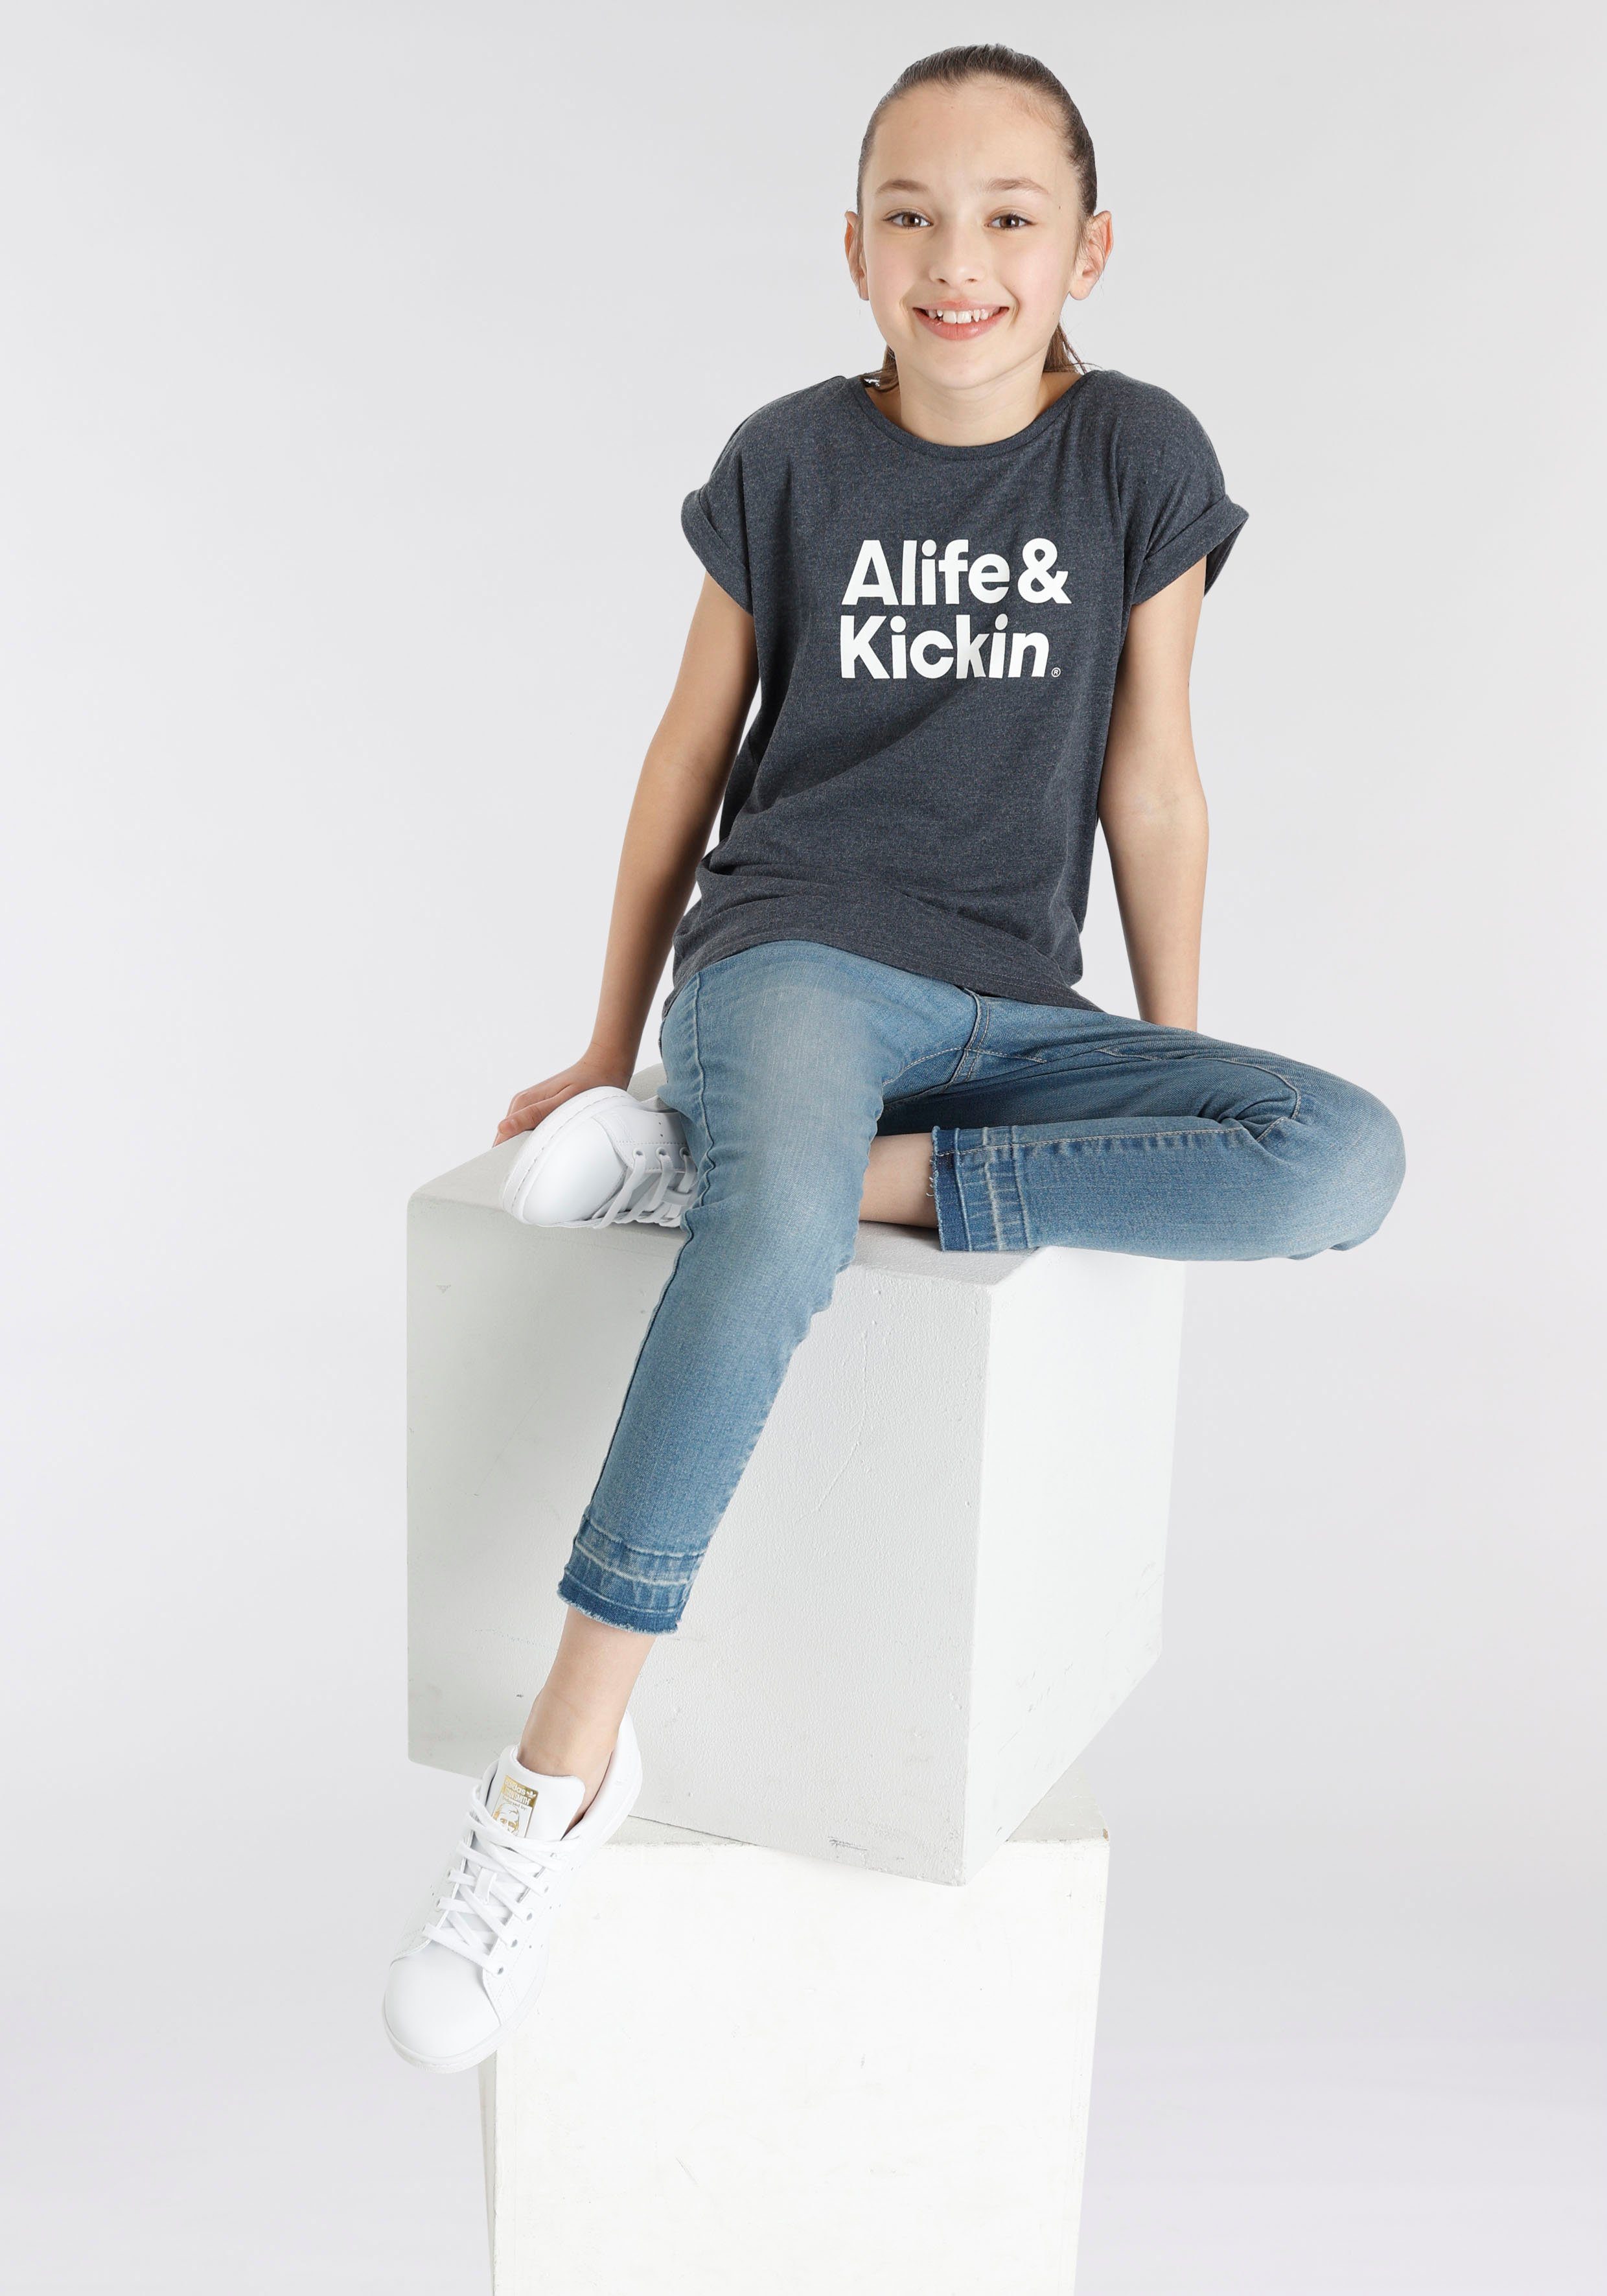 NEUE T-Shirt Logo mit Druck Kids. Kickin MARKE! Alife & Alife Kickin für &